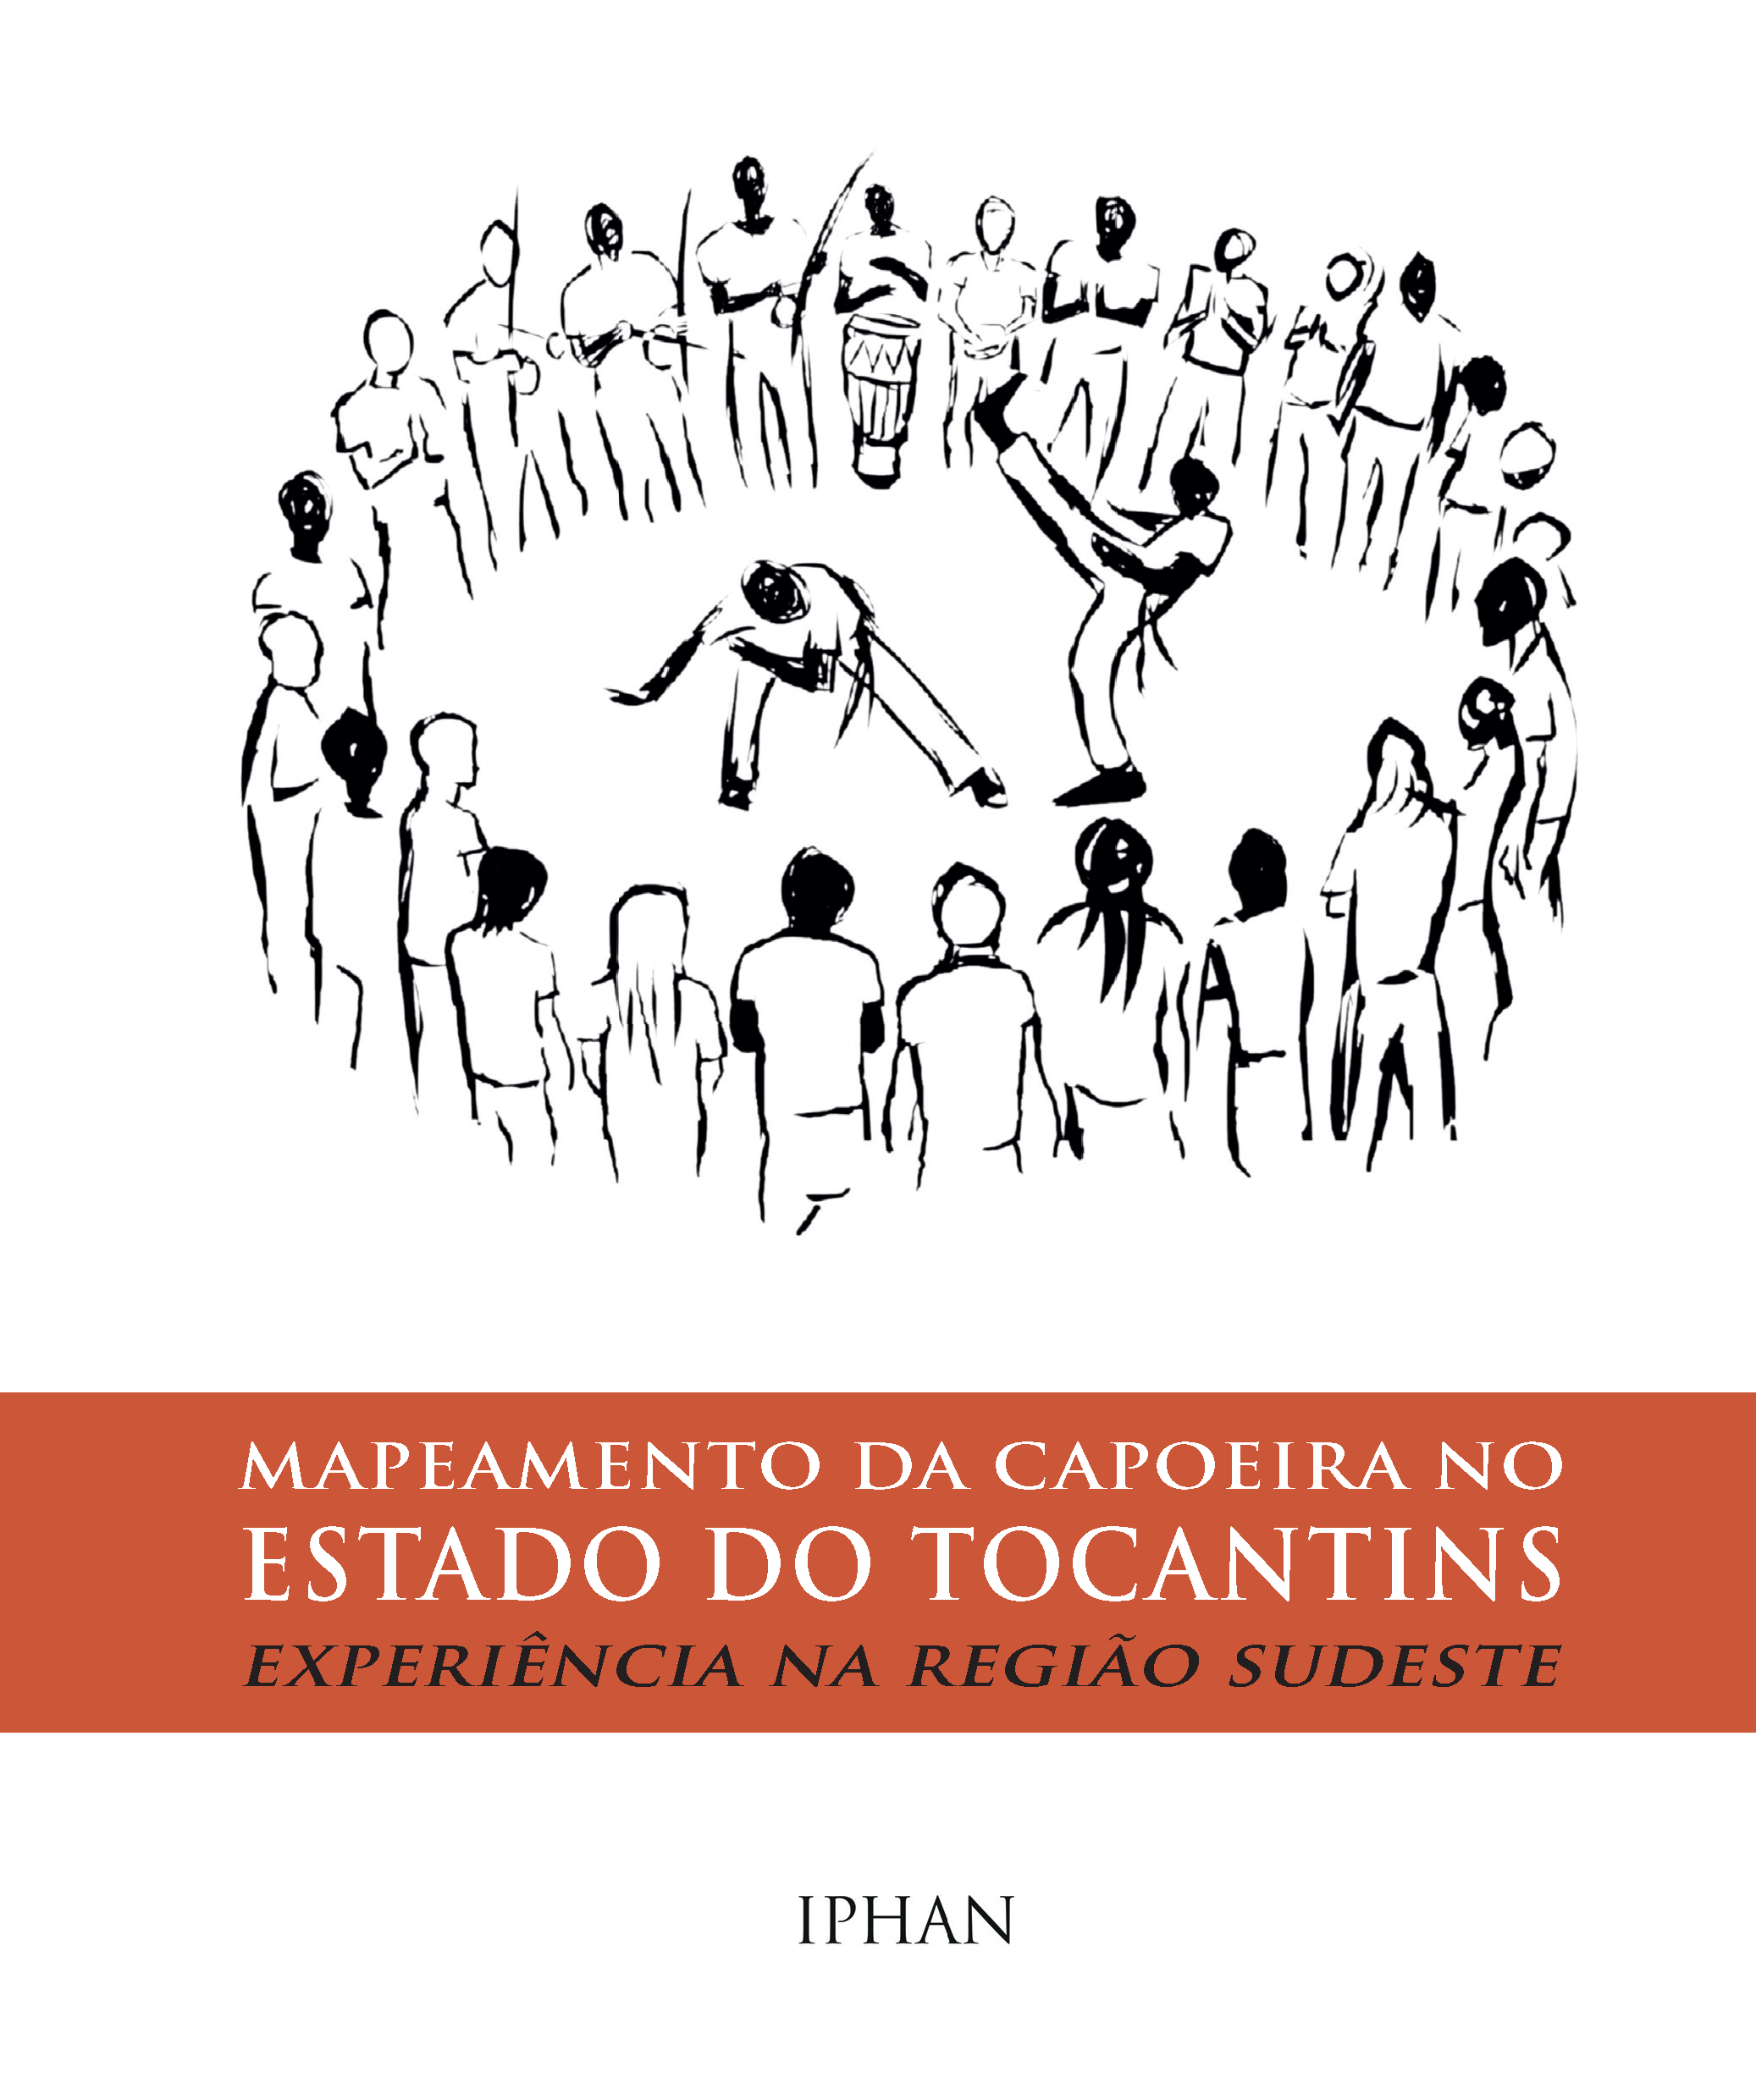 copy2_of_Mapeamento_Capoeira_Tocantins_Final2